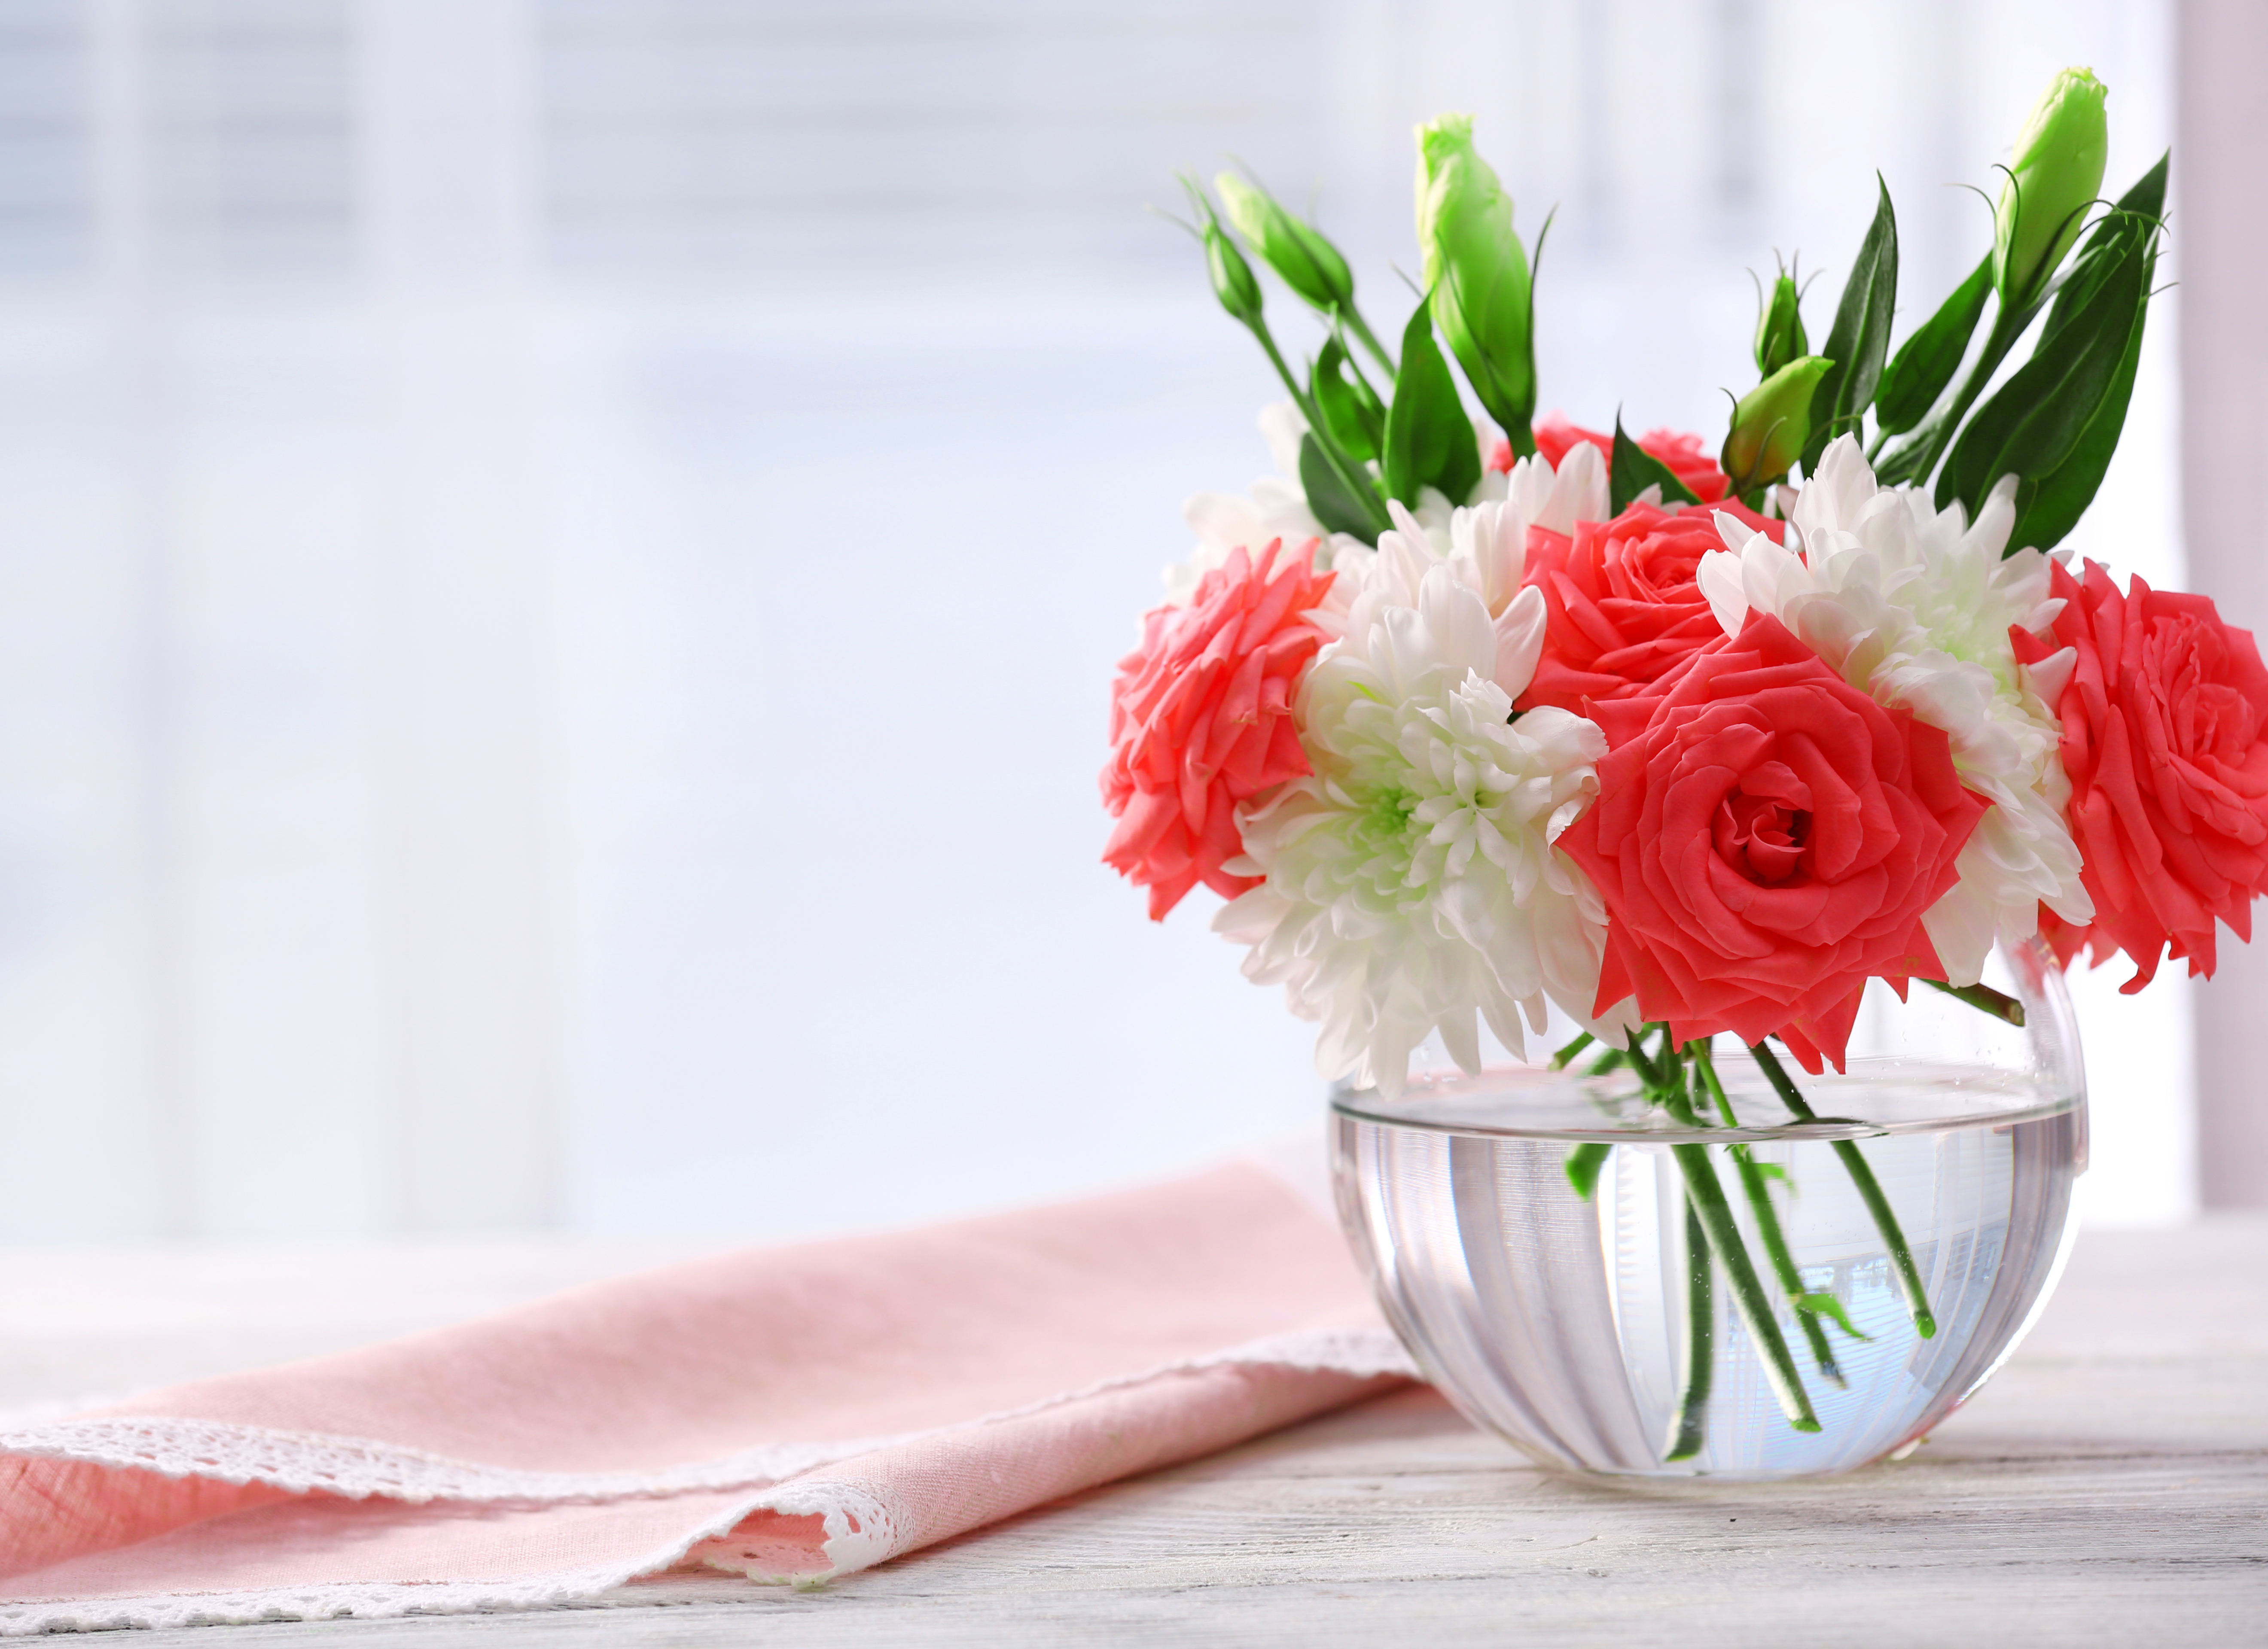 Flower Rose Vase Handkerchief Still Life White Flower Red Flower Eustoma 5280x3840